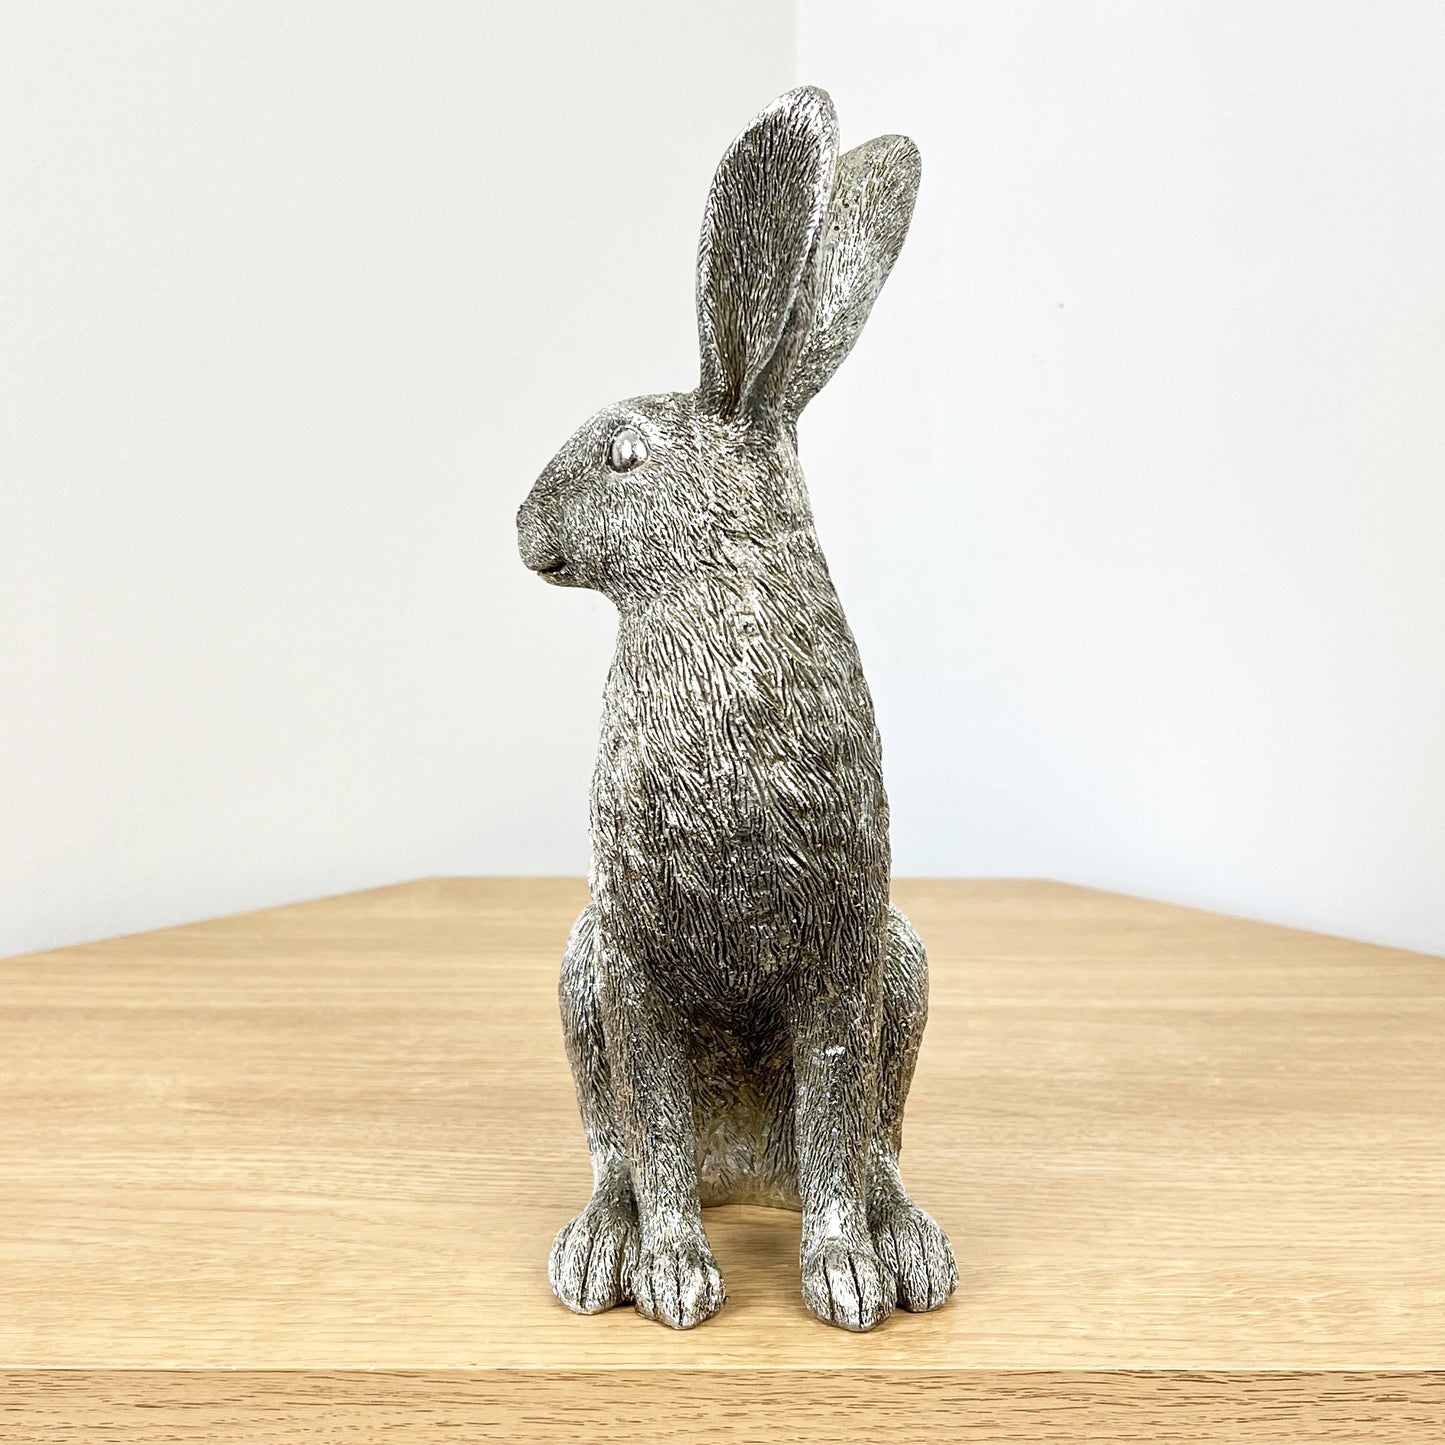 25cm Silver Hare Ornament - Resin